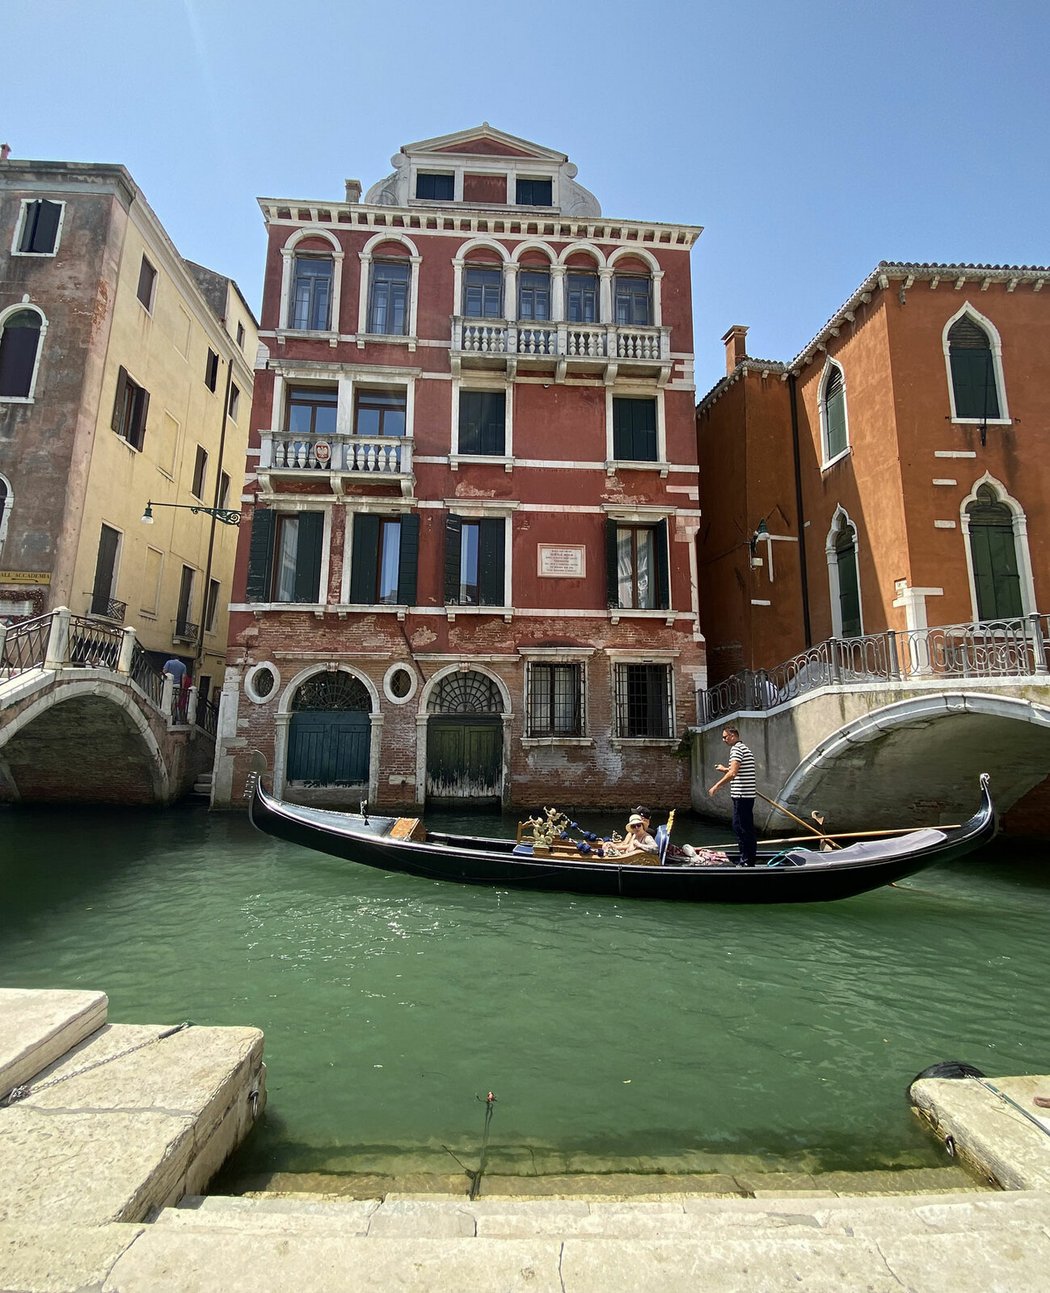 Čtvrtý den trávíme v Benátkách